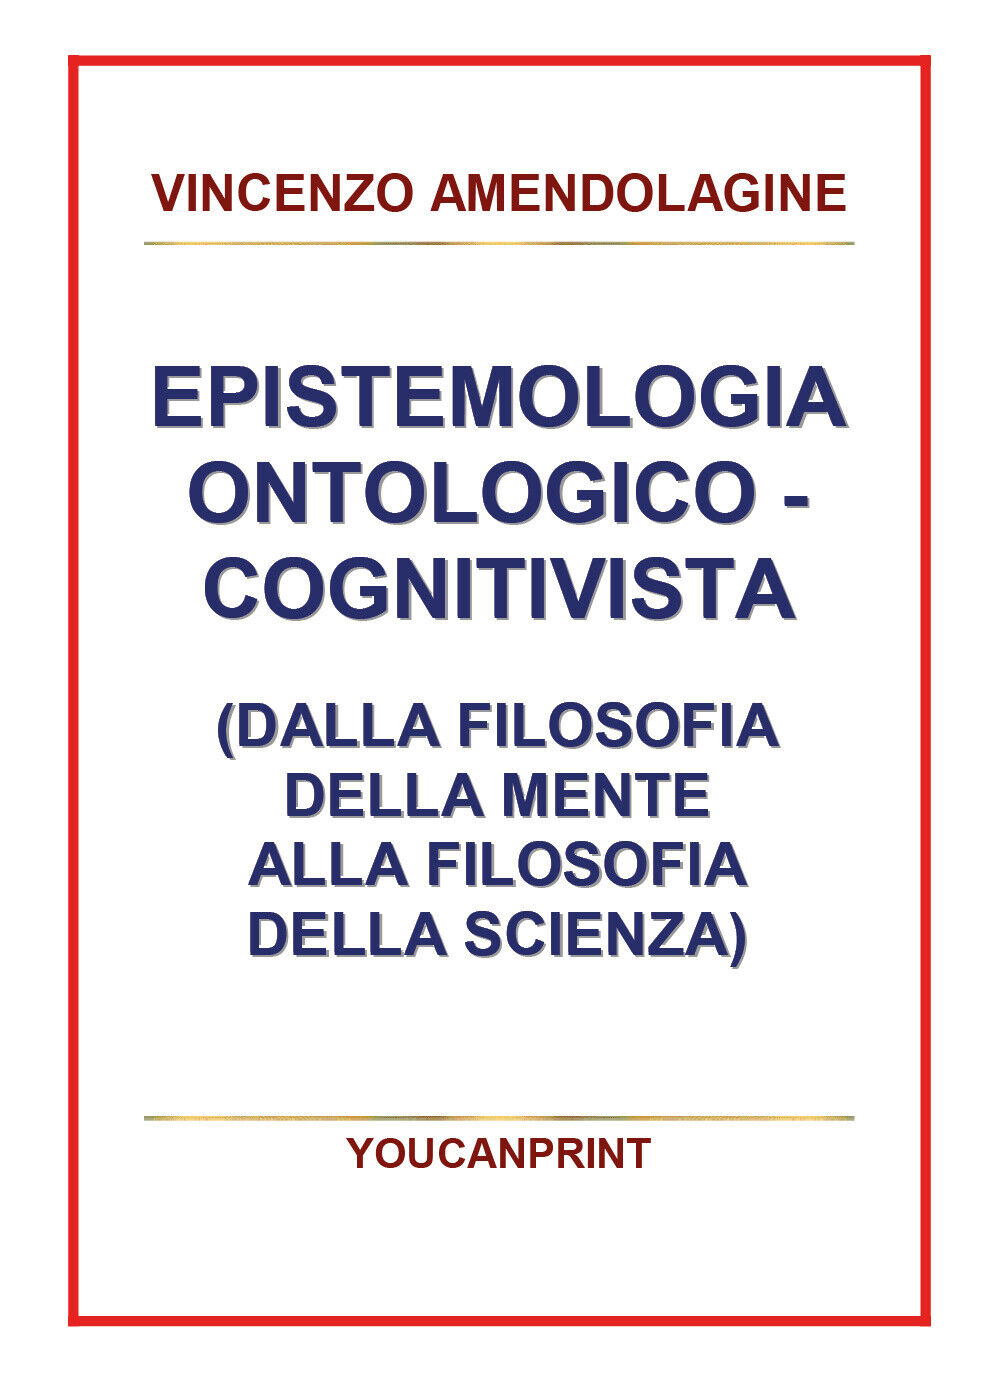 Epistemologia ontologico-cognitivista (dalla filosofia della mente alla filosofi